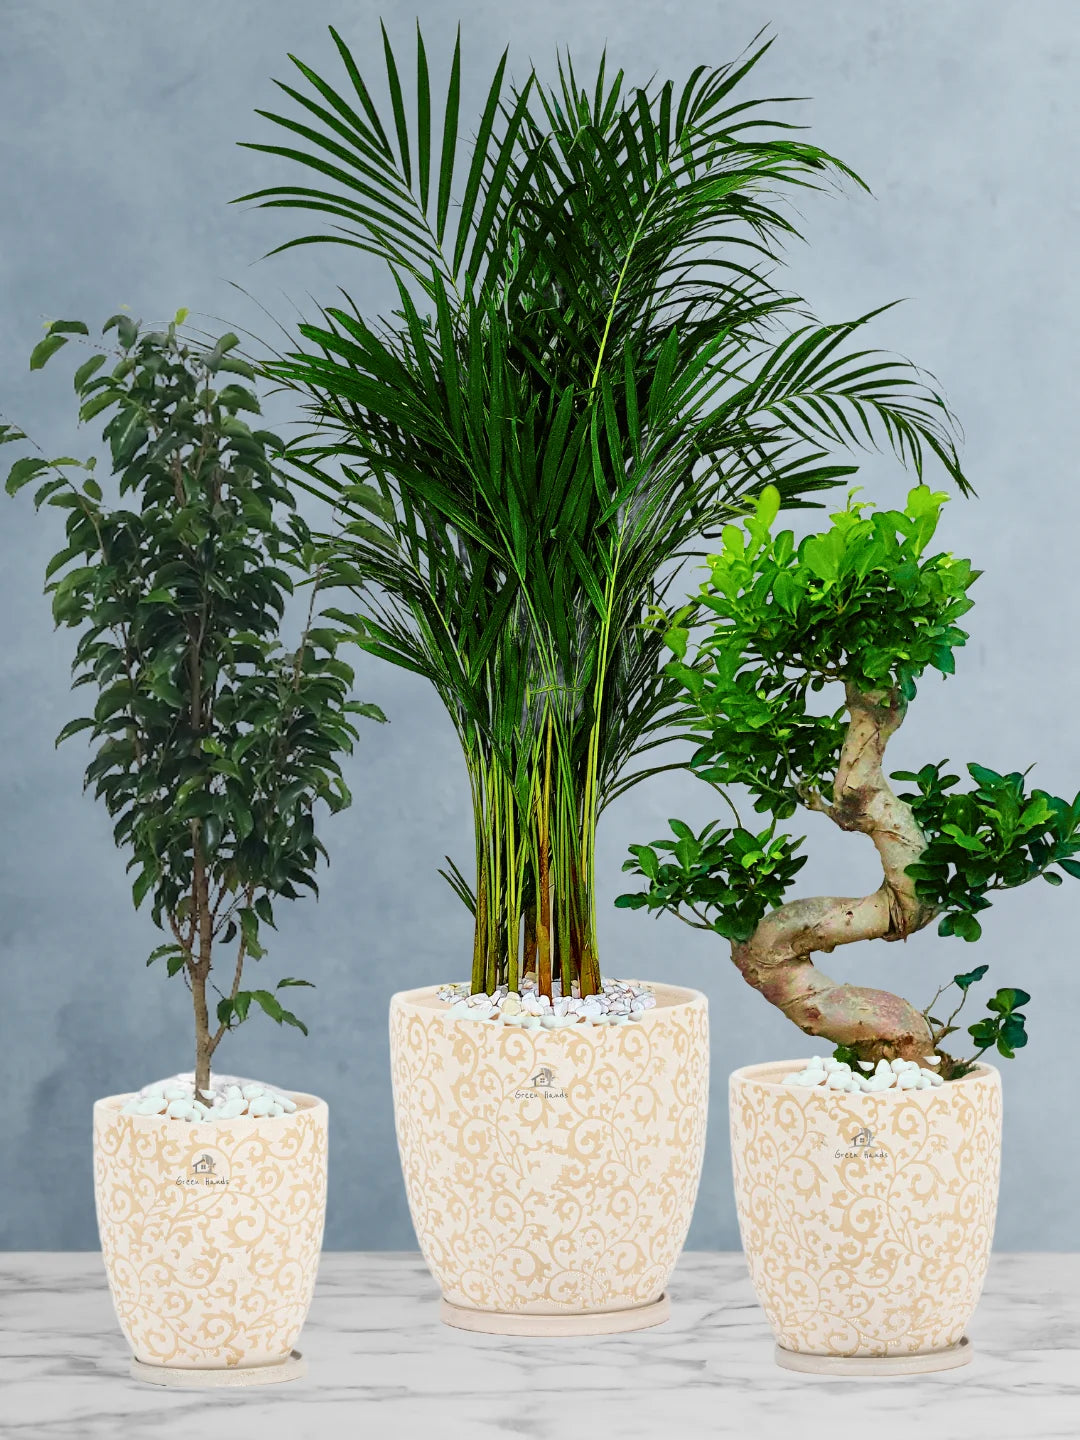 Premium Plants Bundle - Areca Palm, Ficus Benjamina, S Bonsai Tree in Premium Beige Floral Ceramic Pots